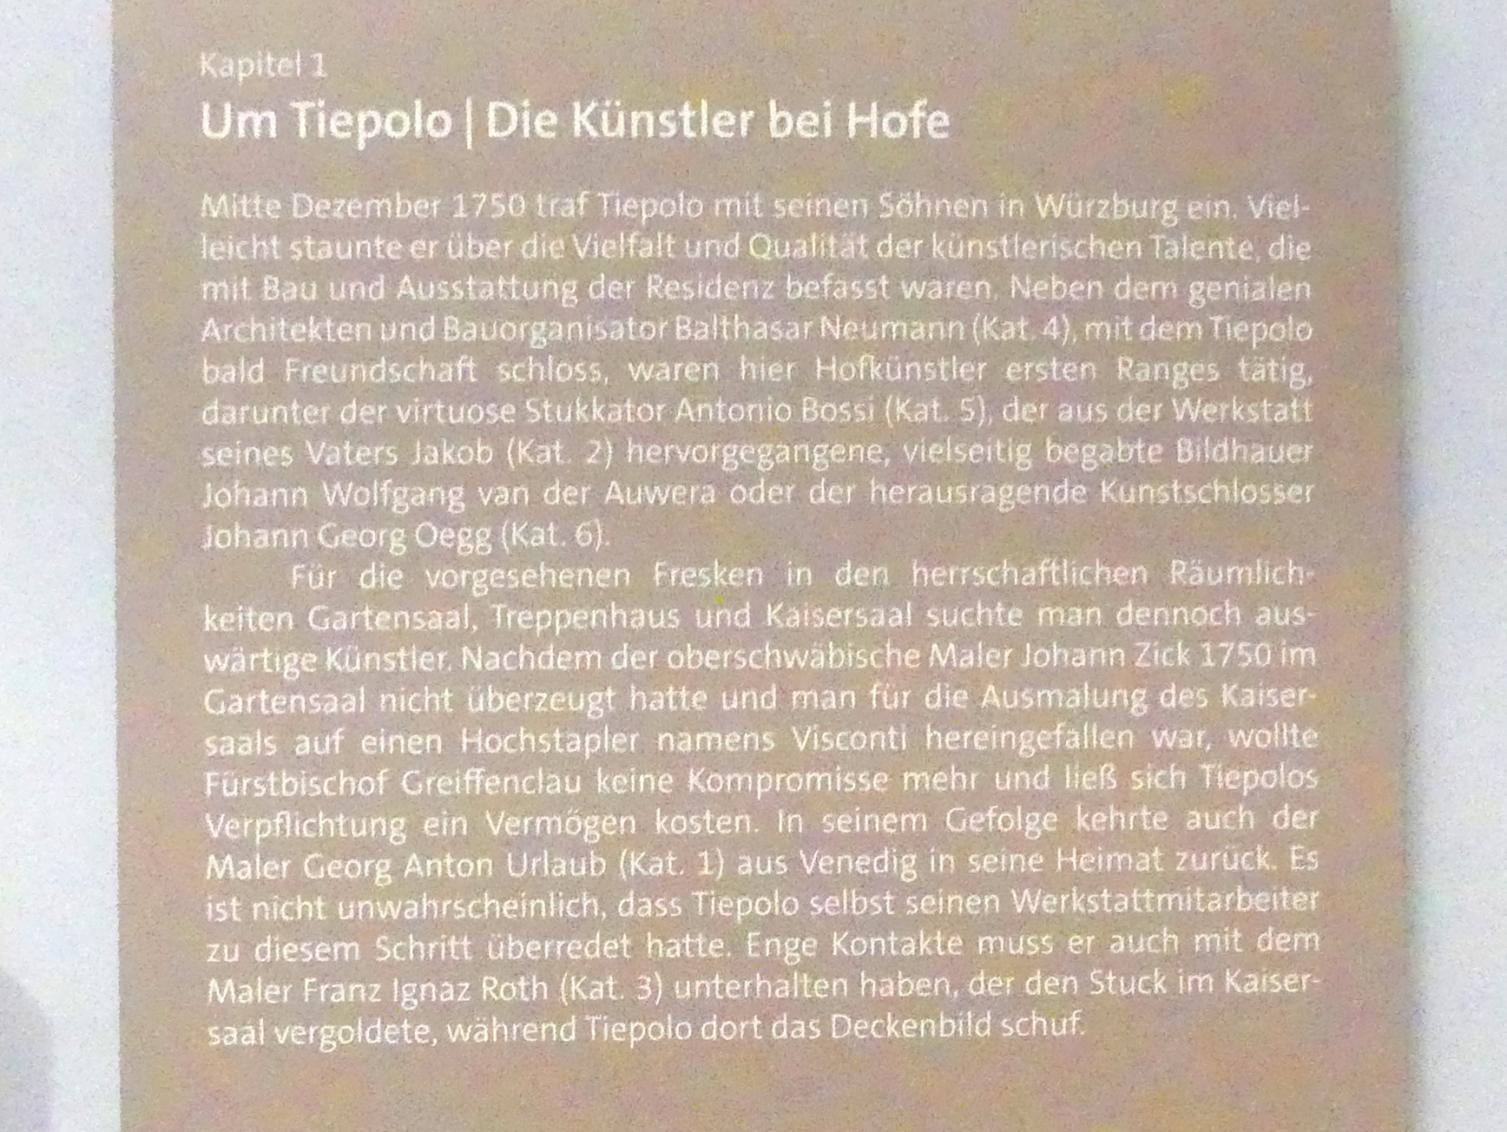 Würzburg, Martin von Wagner Museum, Ausstellung "Tiepolo und seine Zeit in Würzburg" vom 31.10.2020-15.07.2021, Bild 3/12